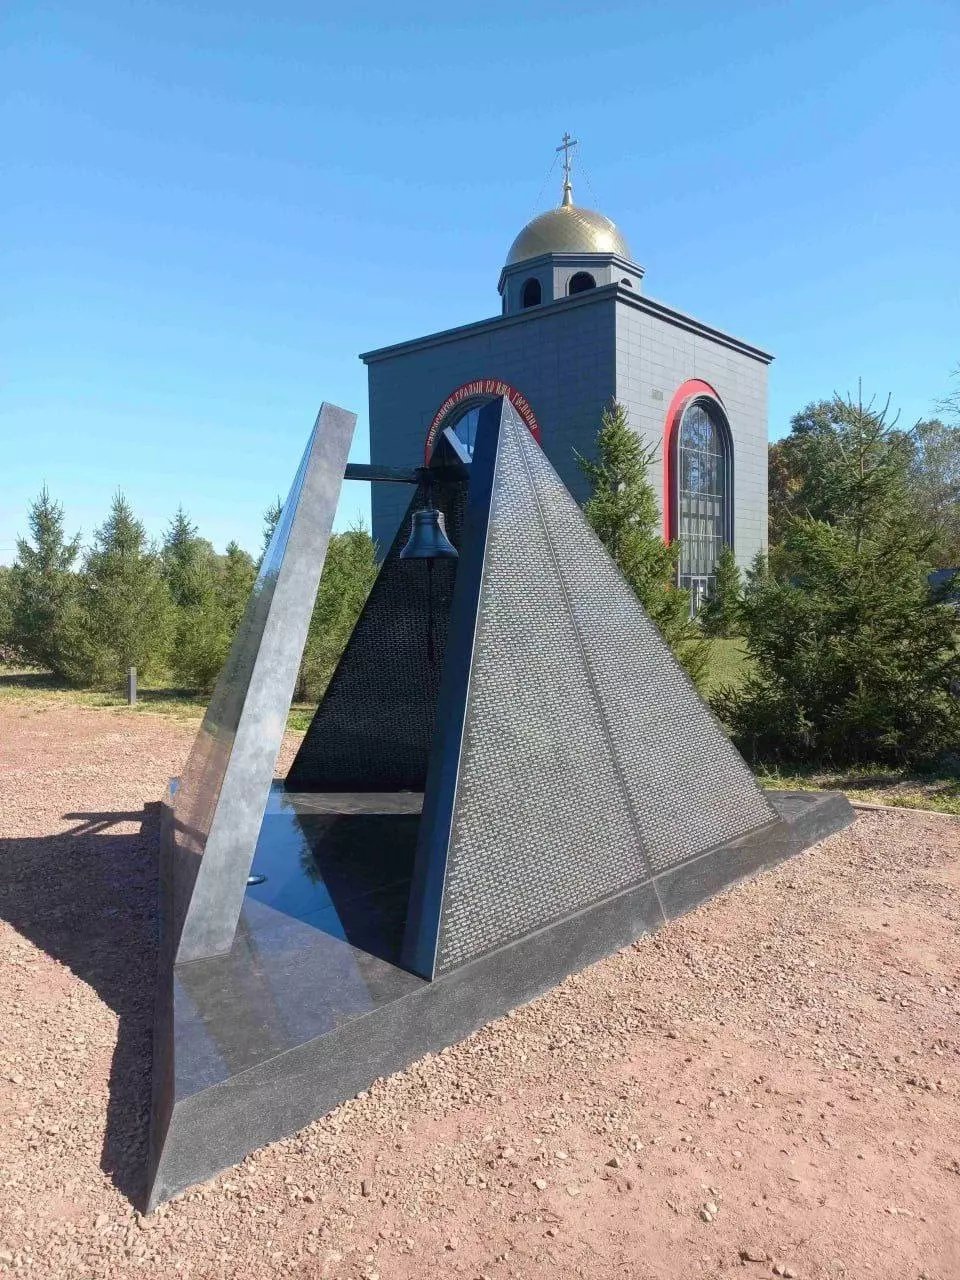 Близ населённого пункта Горячий Ключ, установлена мемориальная стелла посвящённая памяти всех погибших бойцов «Группы Вагнера».